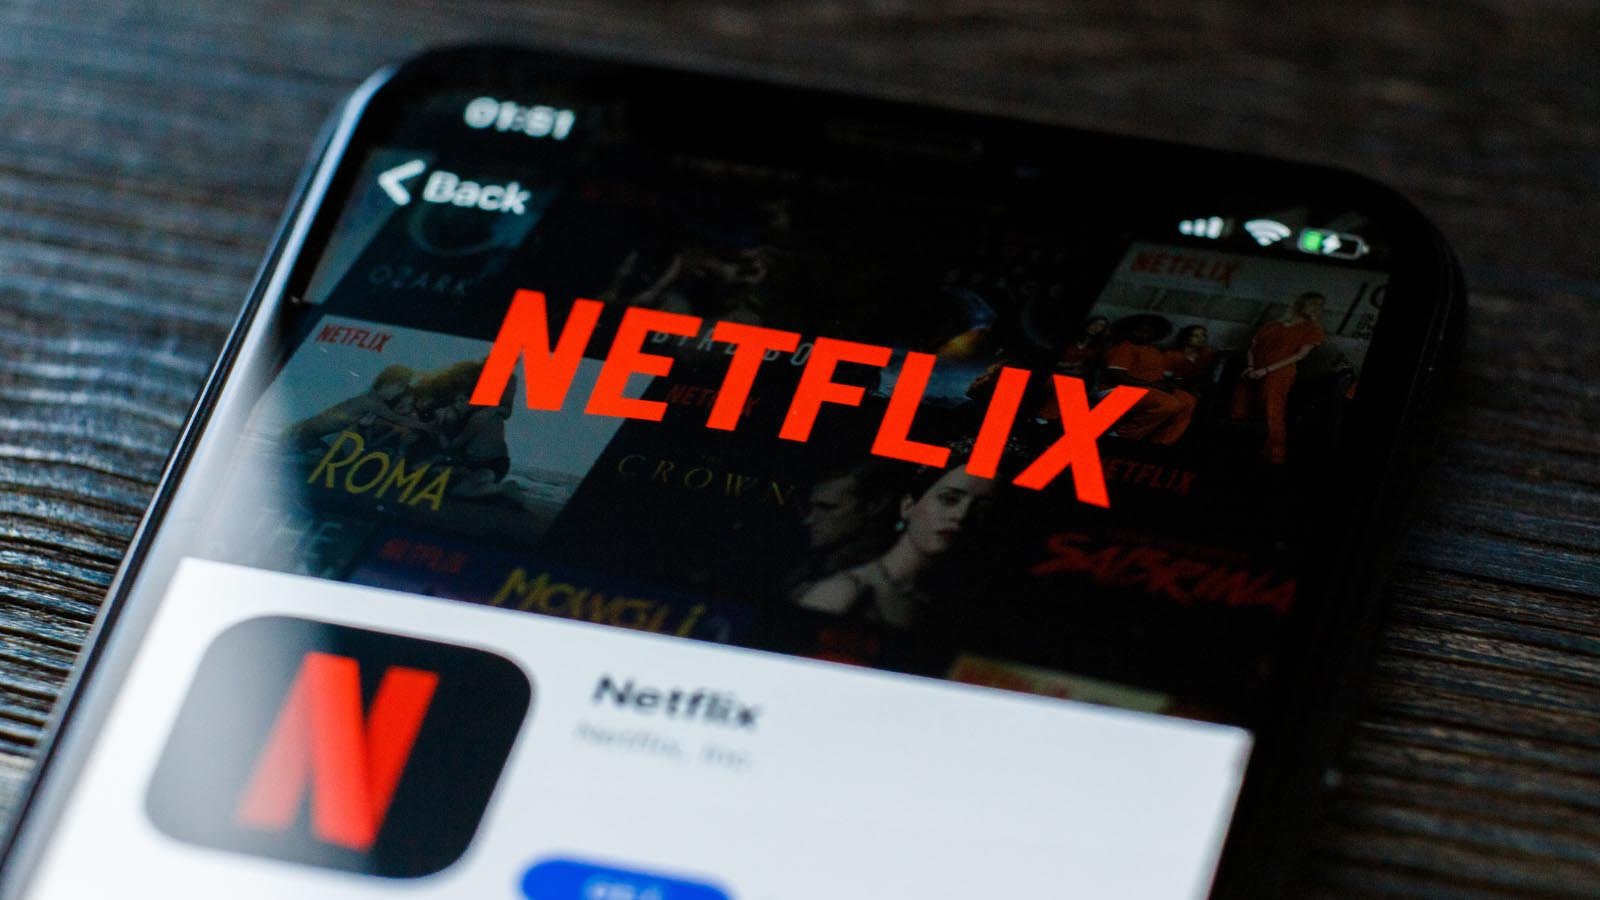 Netflix (NFLX) app open on a phone screen